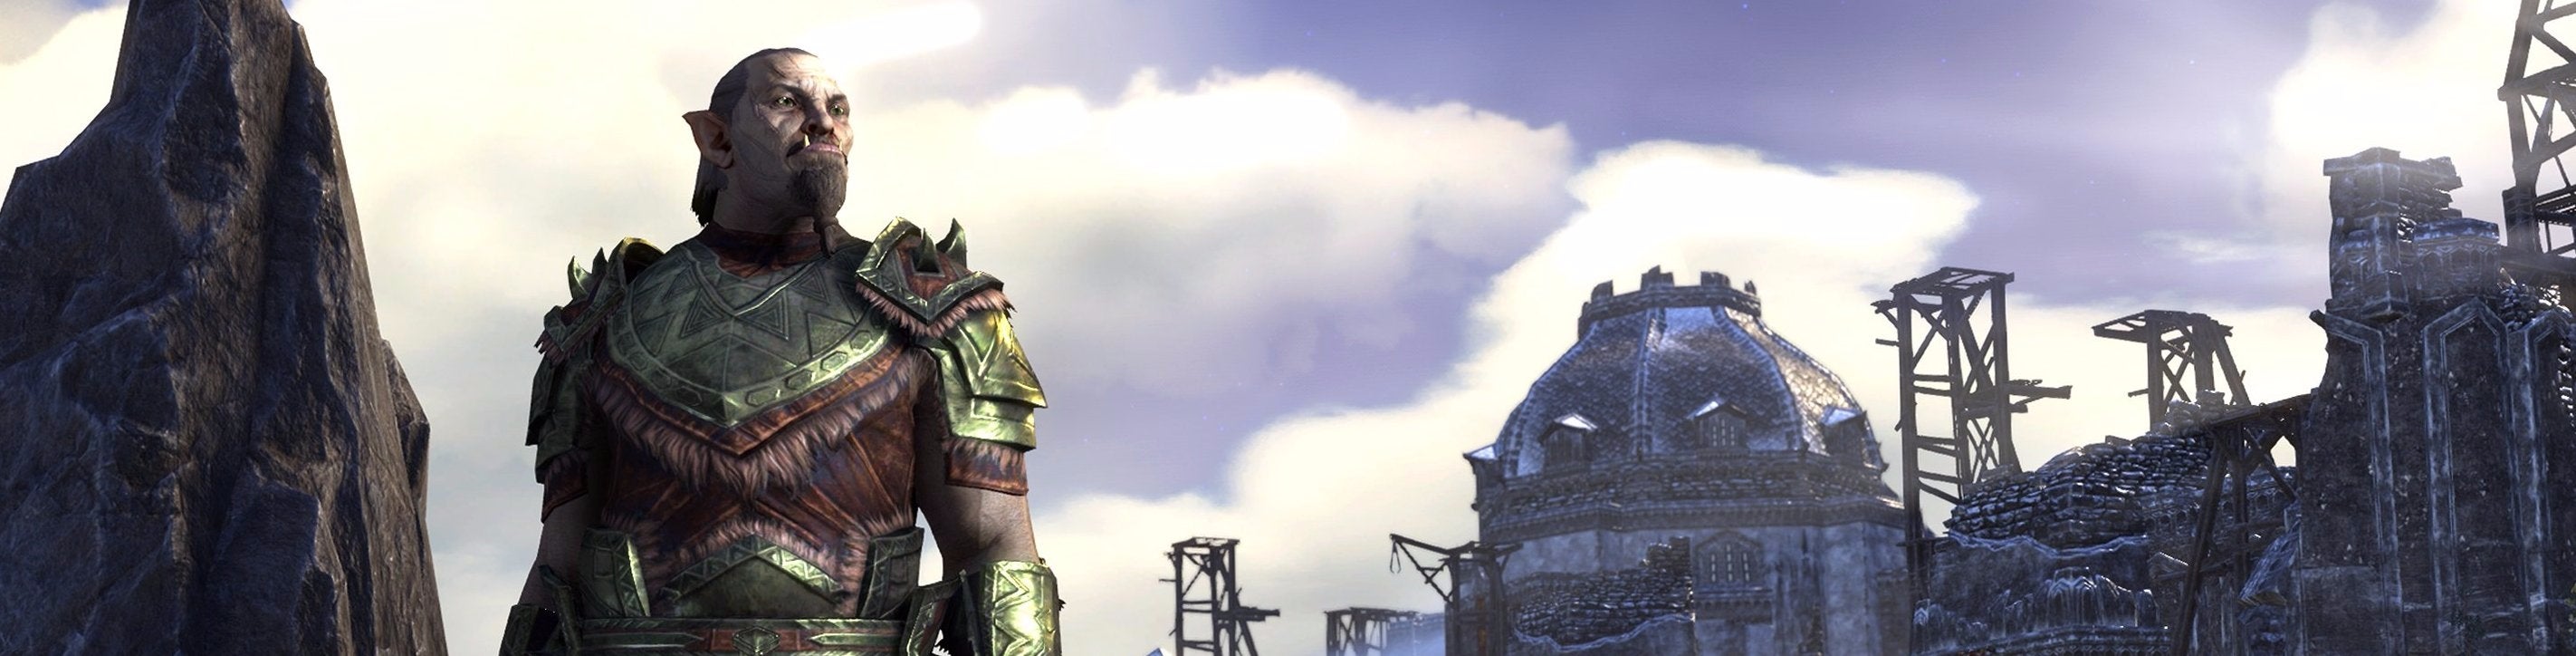 Afbeeldingen van The Elder Scrolls Online: Tamriel Unlimited - Orsinium review